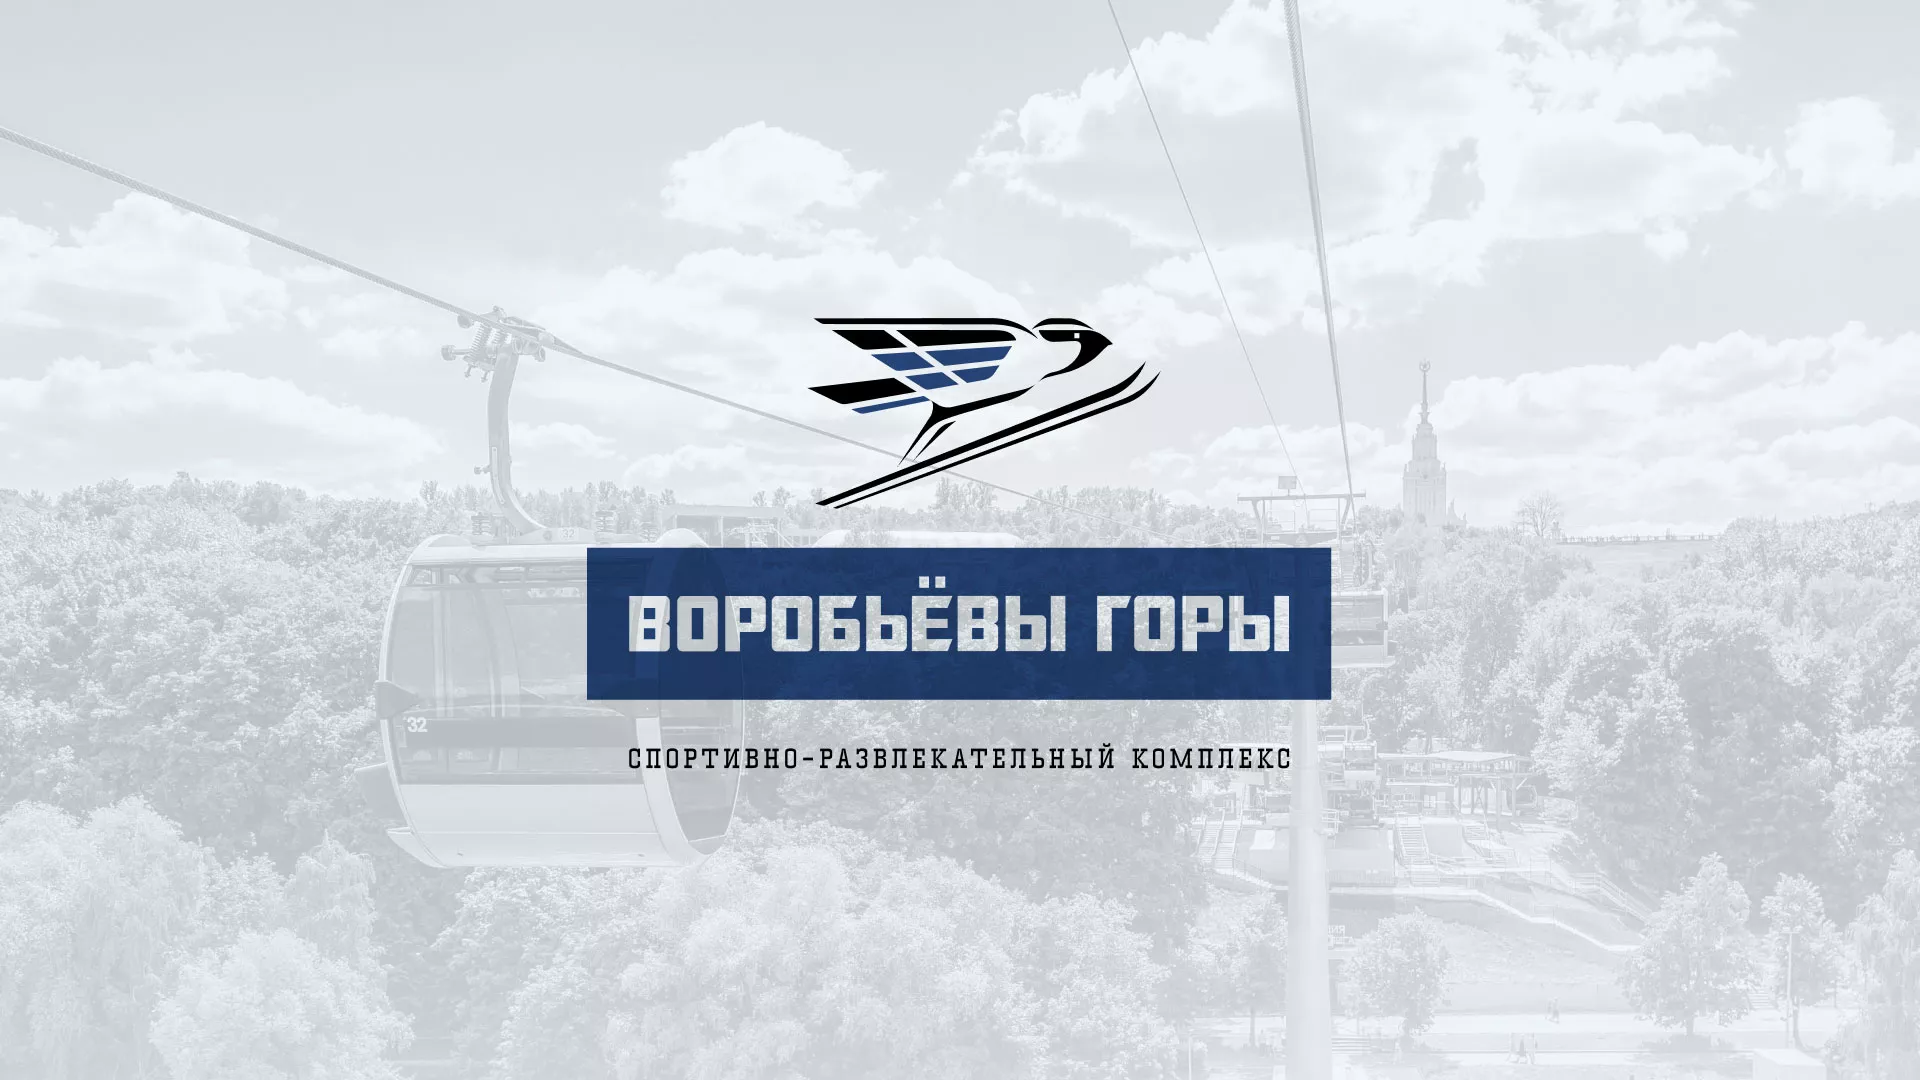 Разработка сайта в Уссурийске для спортивно-развлекательного комплекса «Воробьёвы горы»